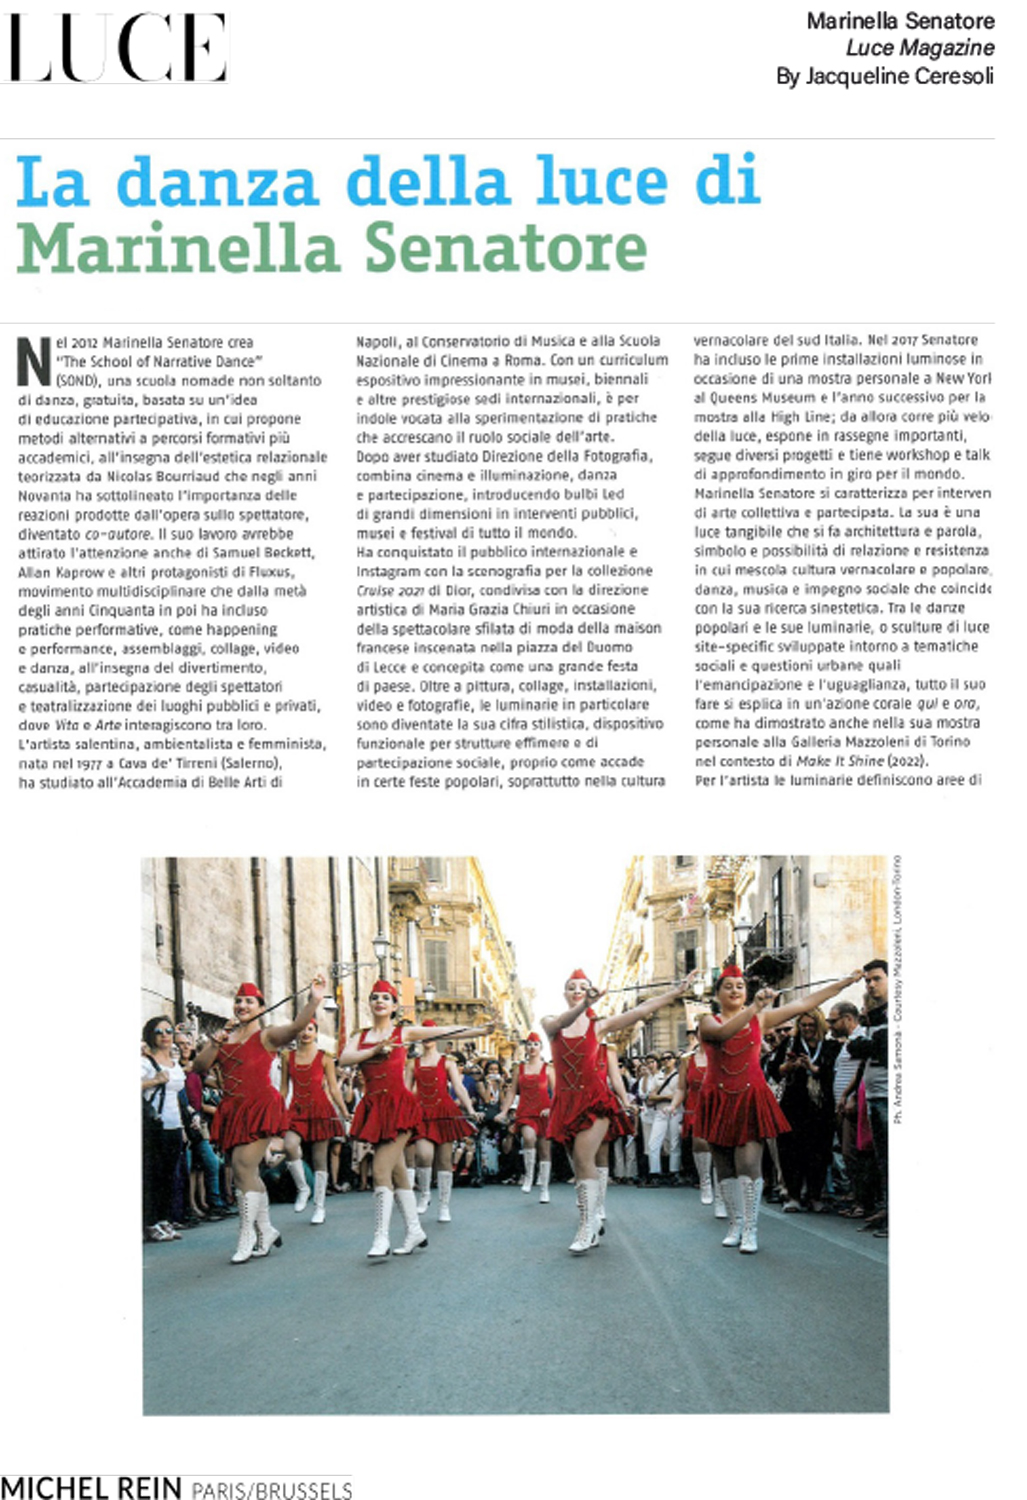 La danza della luce di Marinella Senatore - Luce Magazine